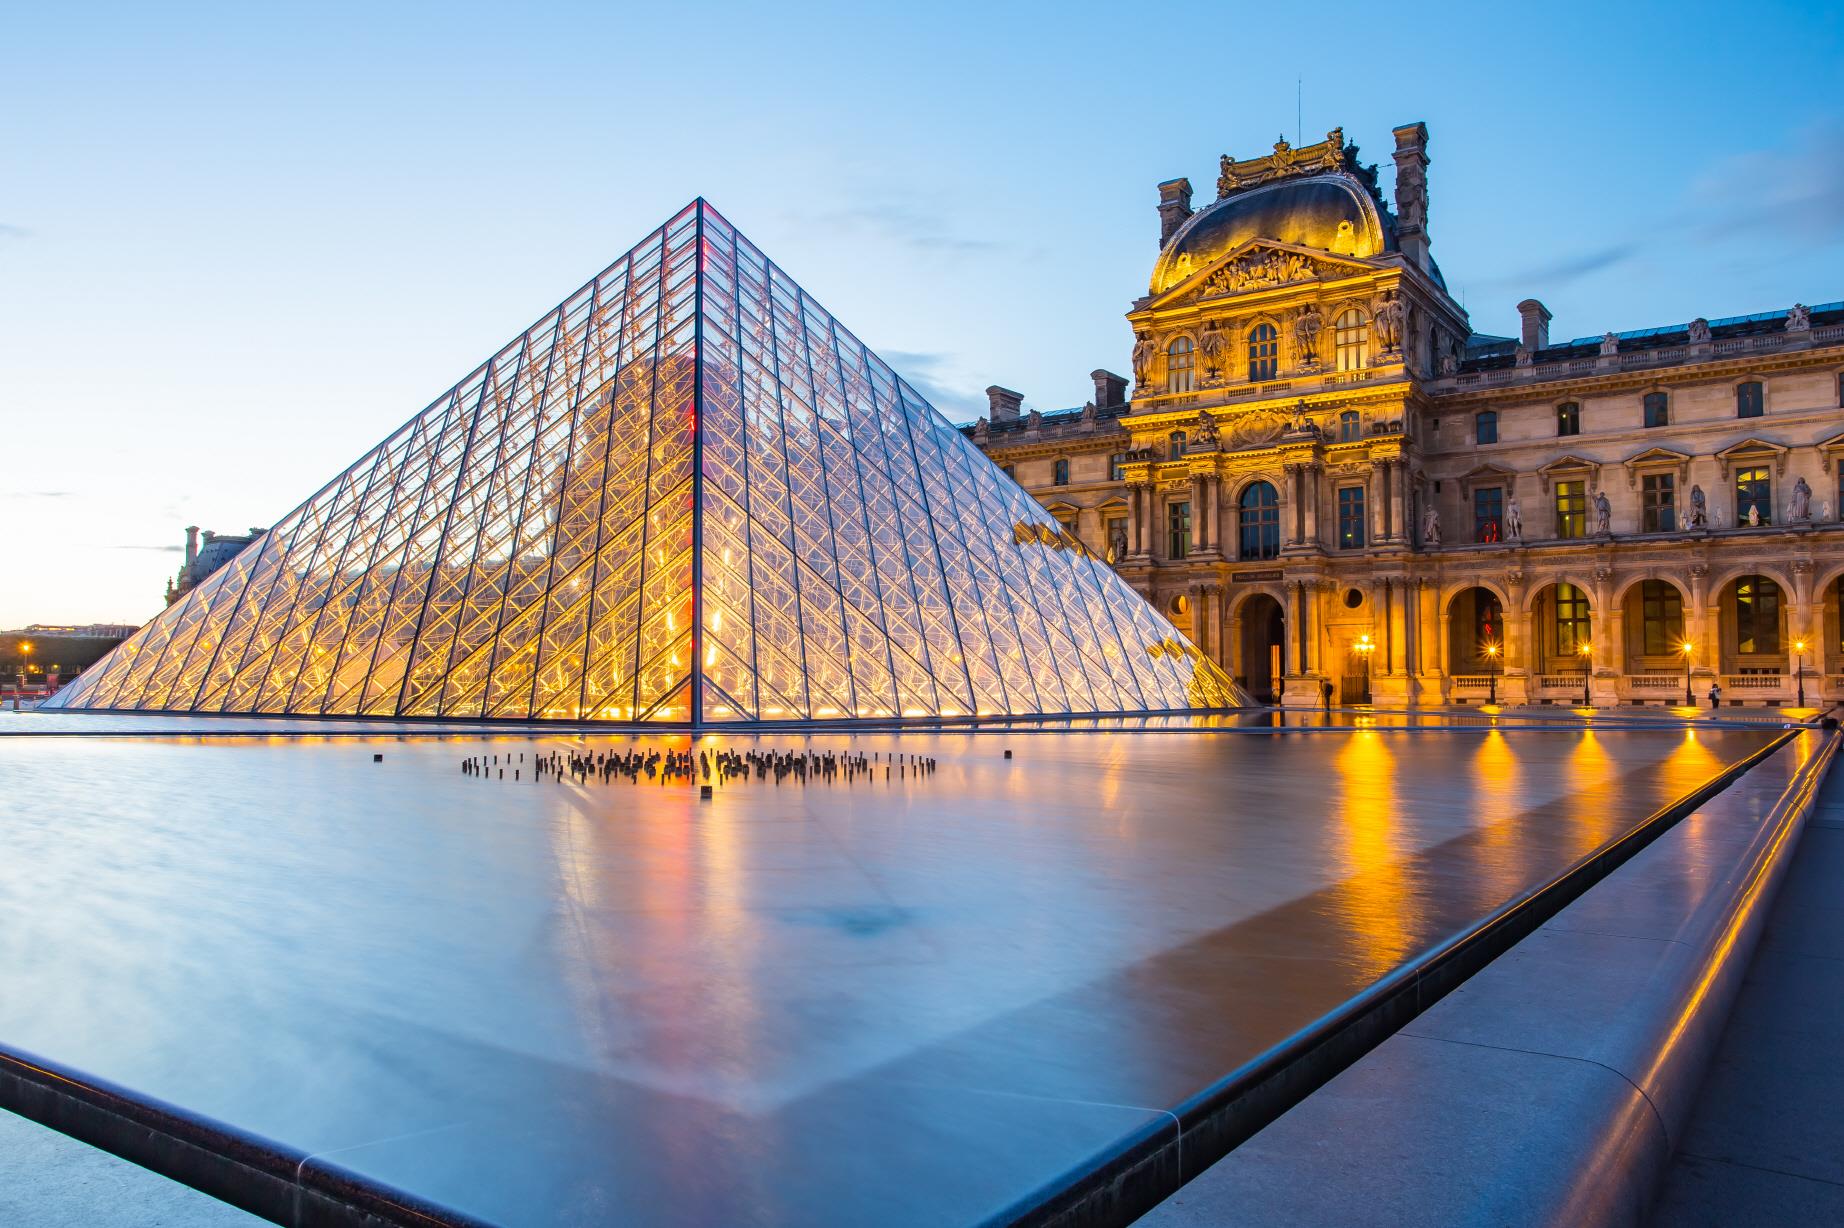 루브르 박물관  Louvre Museum